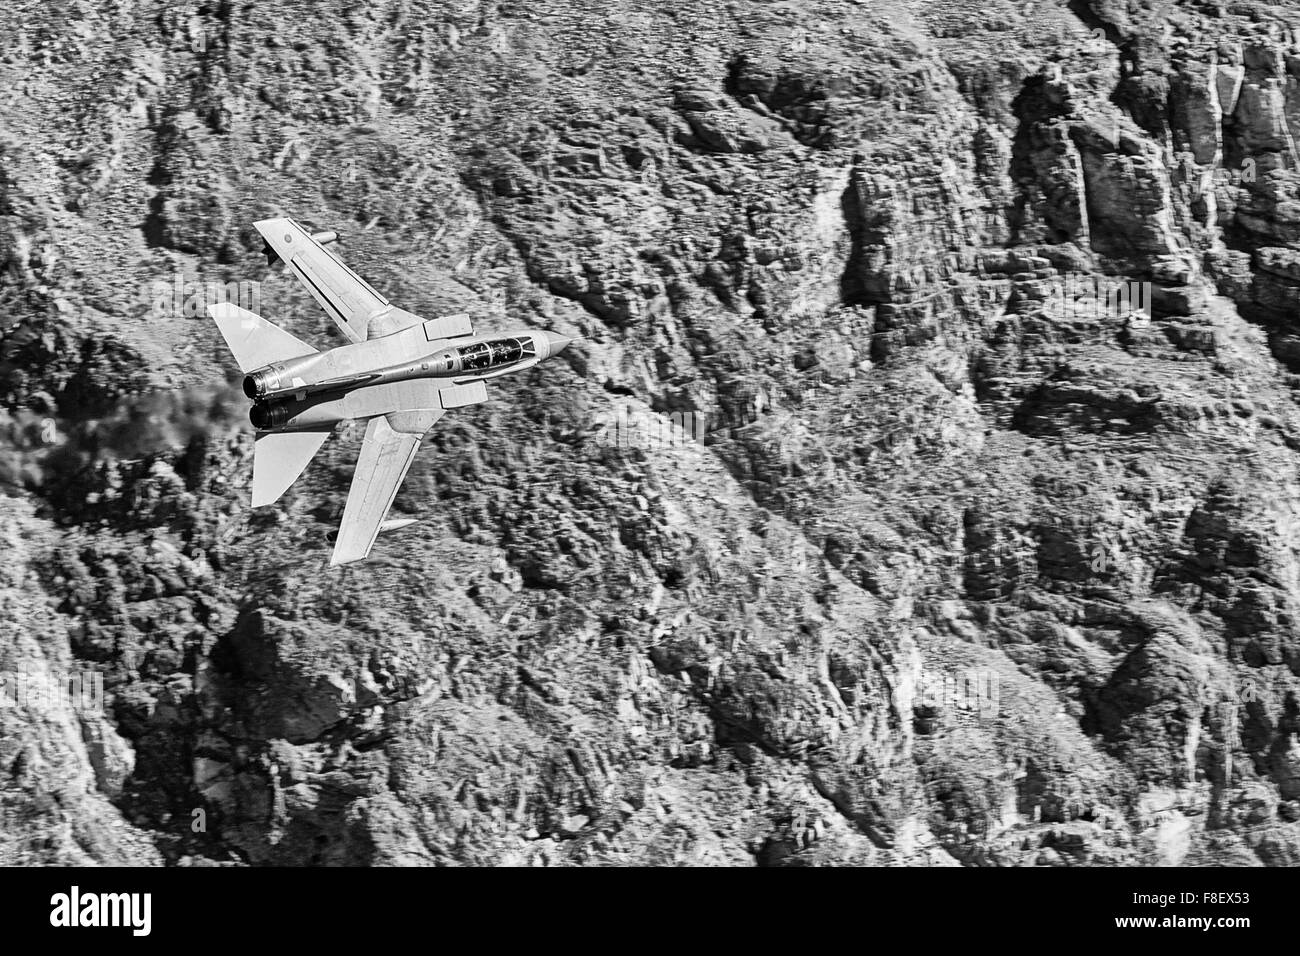 Photo en noir et blanc d'Un avion de chasse Tornado GR4 de la Royal Air Force volant à bas niveau à travers Une vallée du désert. Banque D'Images